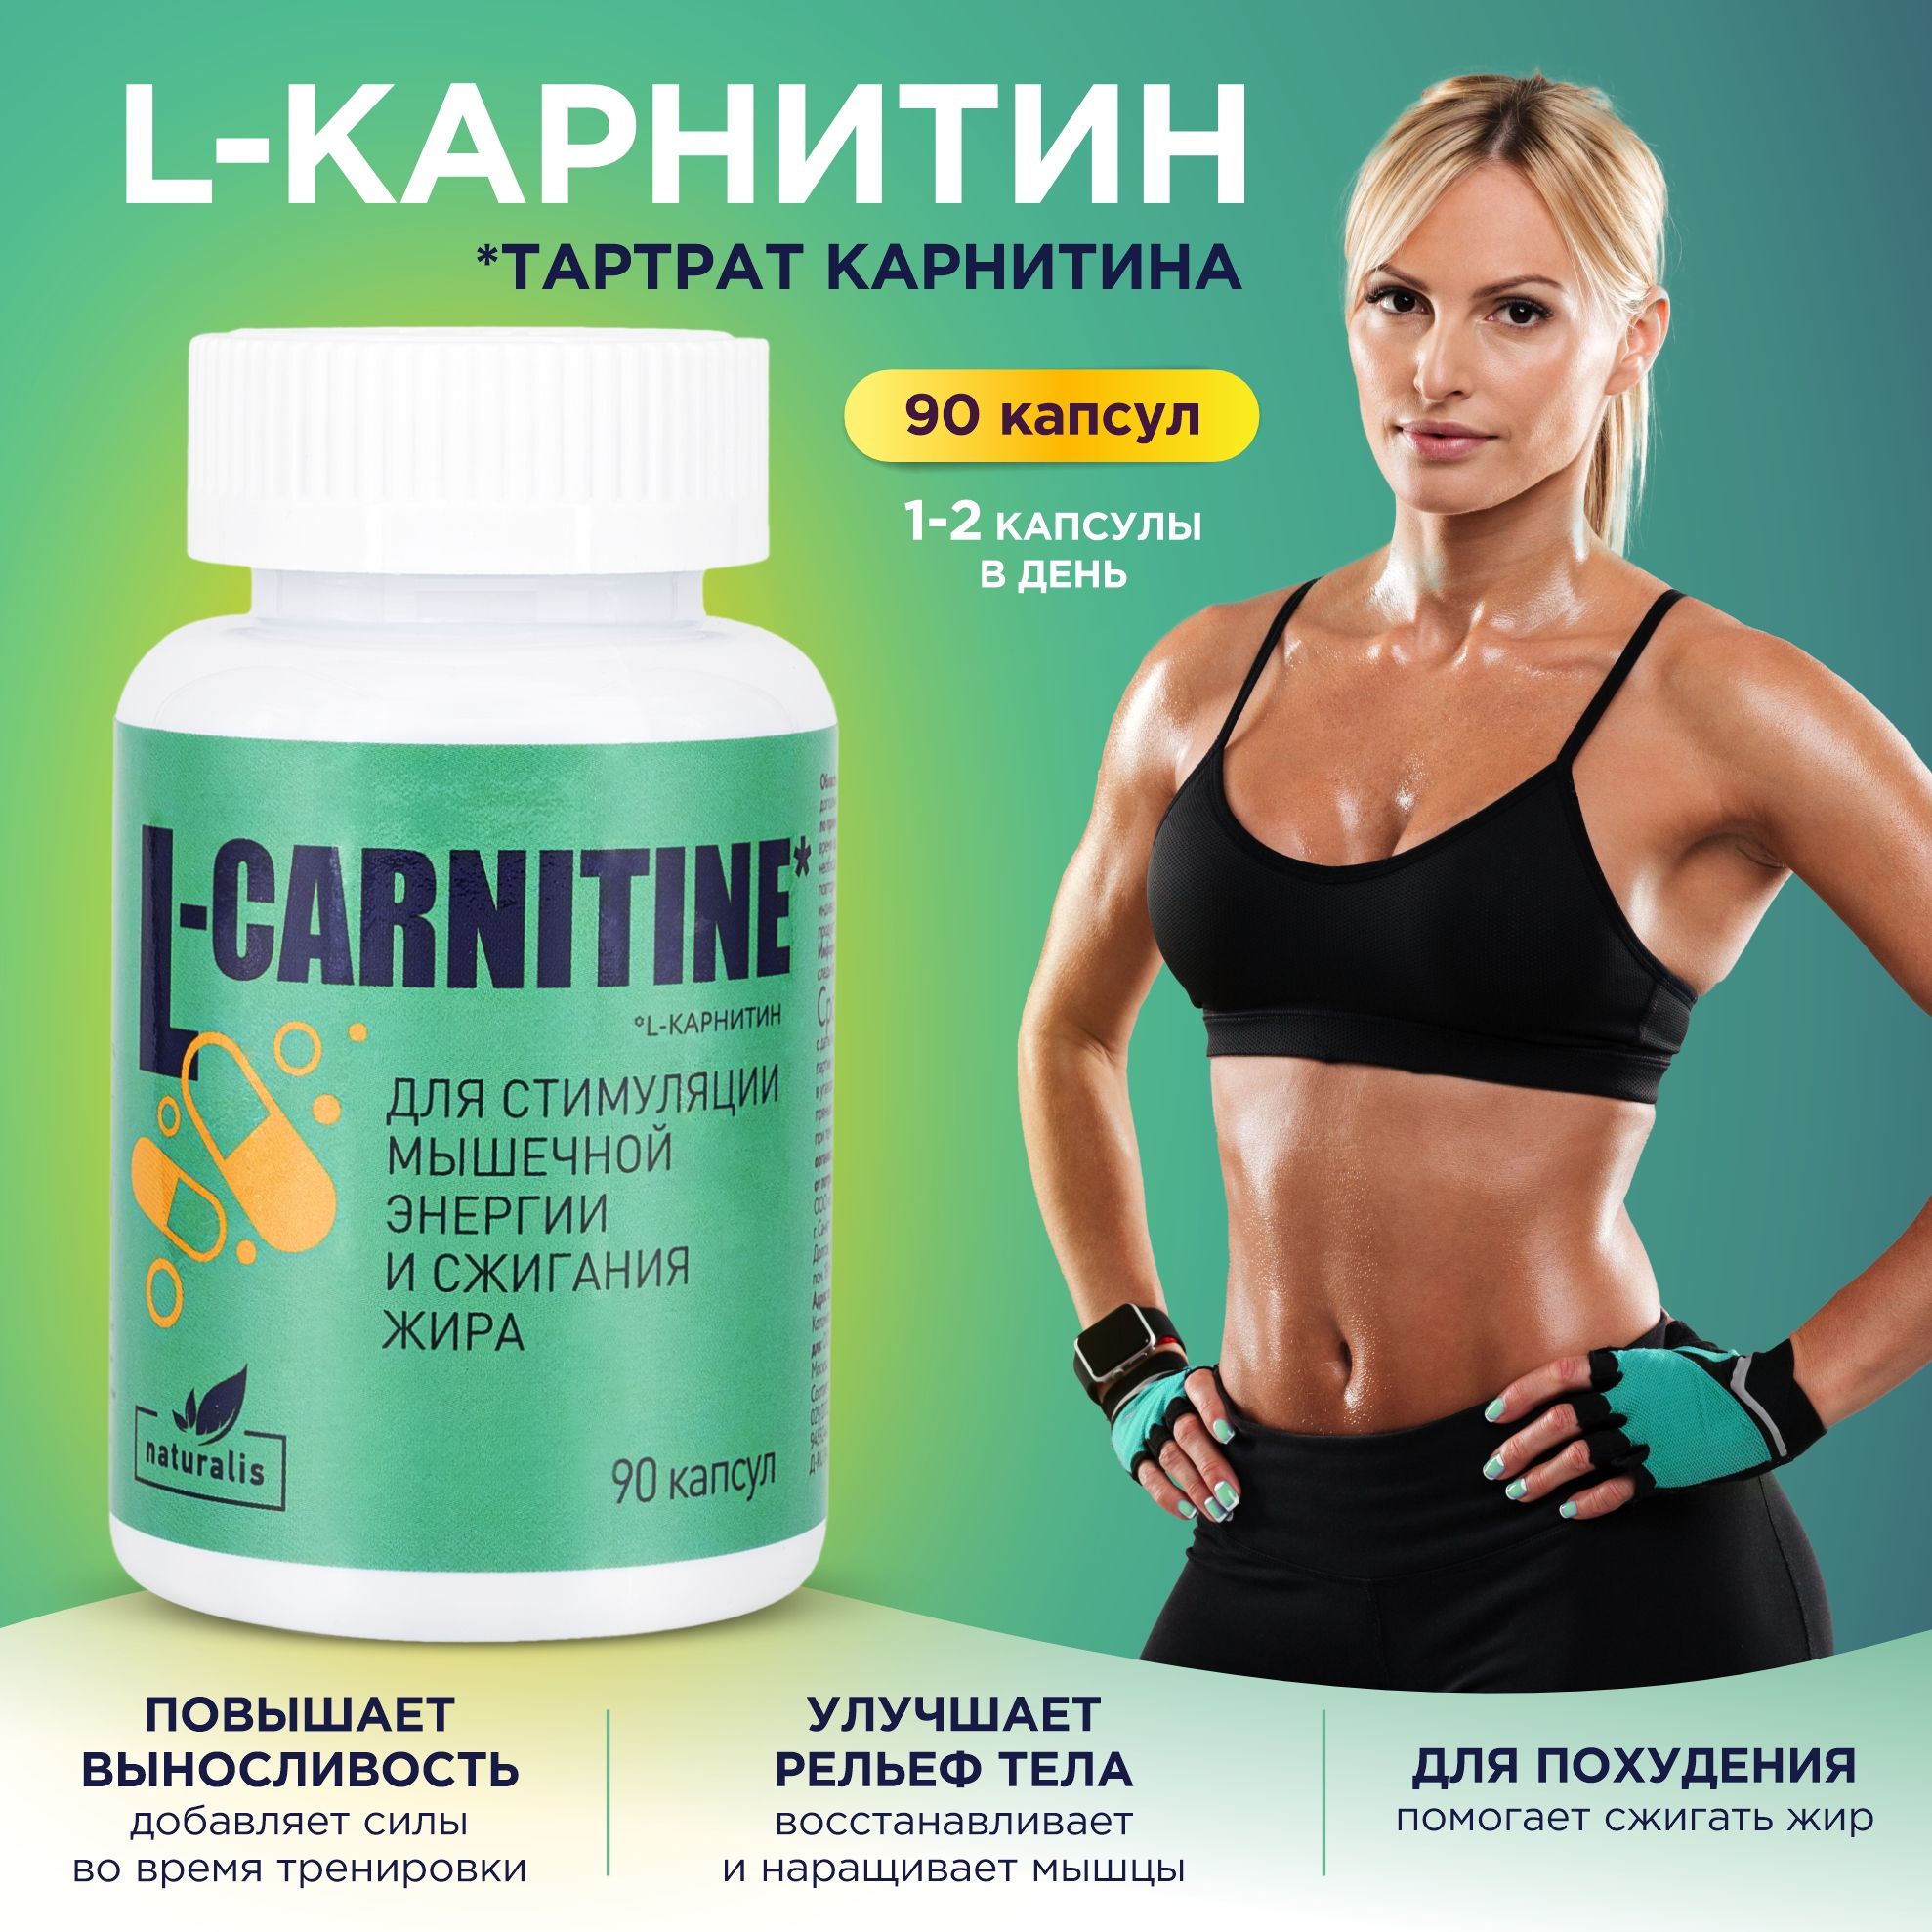 L-карнитинcarnitine,длякоррекциивесажиросжигатель,витаминыдляпохудения,бадЛкарнитинвкапсулах,90штNaturalisАПТЕКААСНА